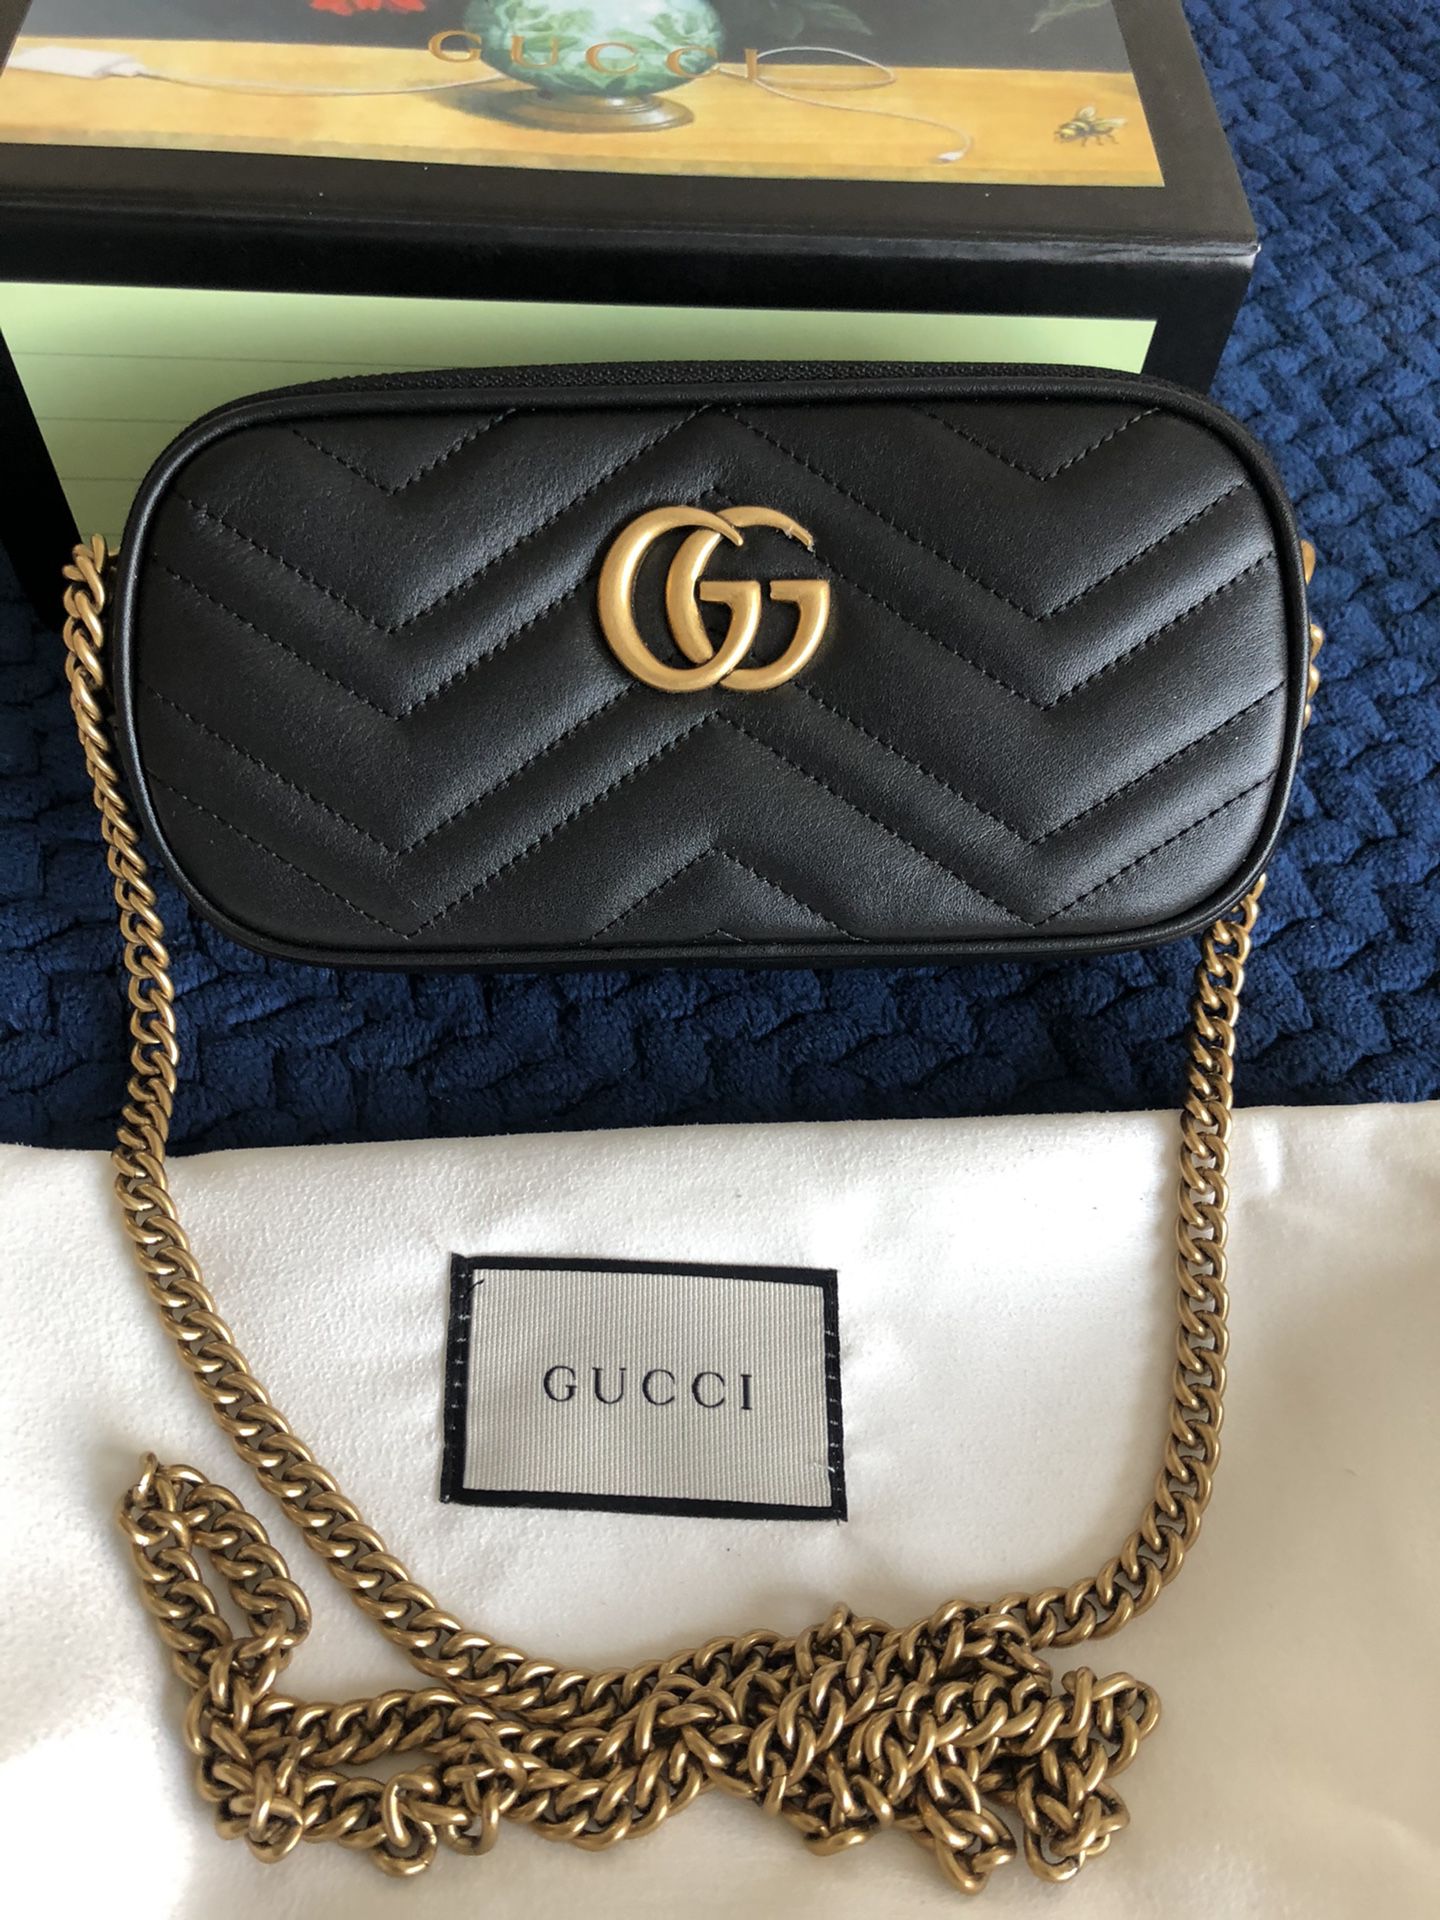 Gucci black leather purse 👛 $350